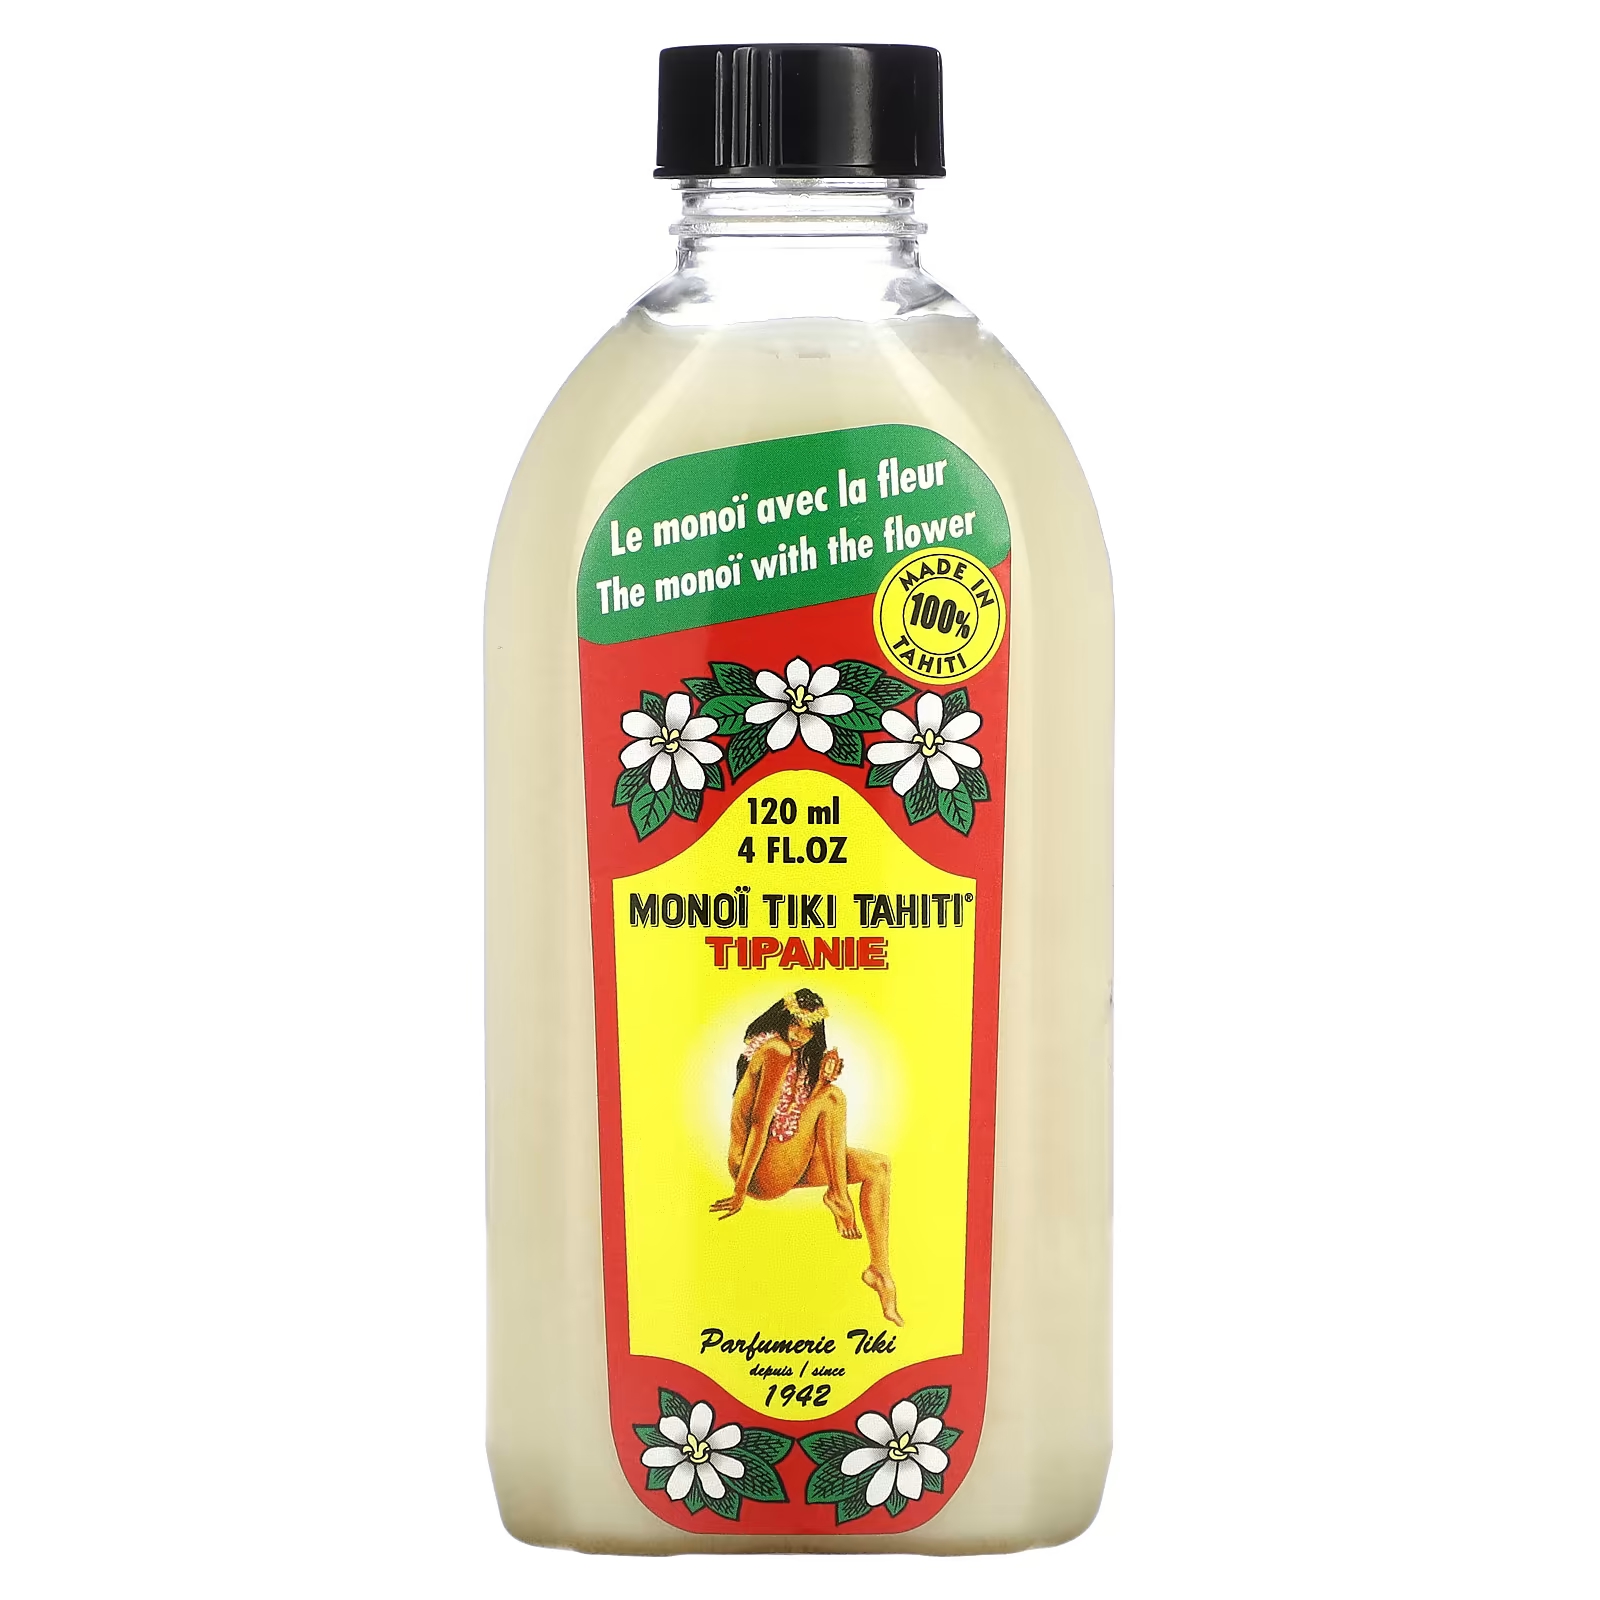 Кокосовое масло Monoi Tiare Tahiti Tipanie, 4 жидких унции (120 мл)